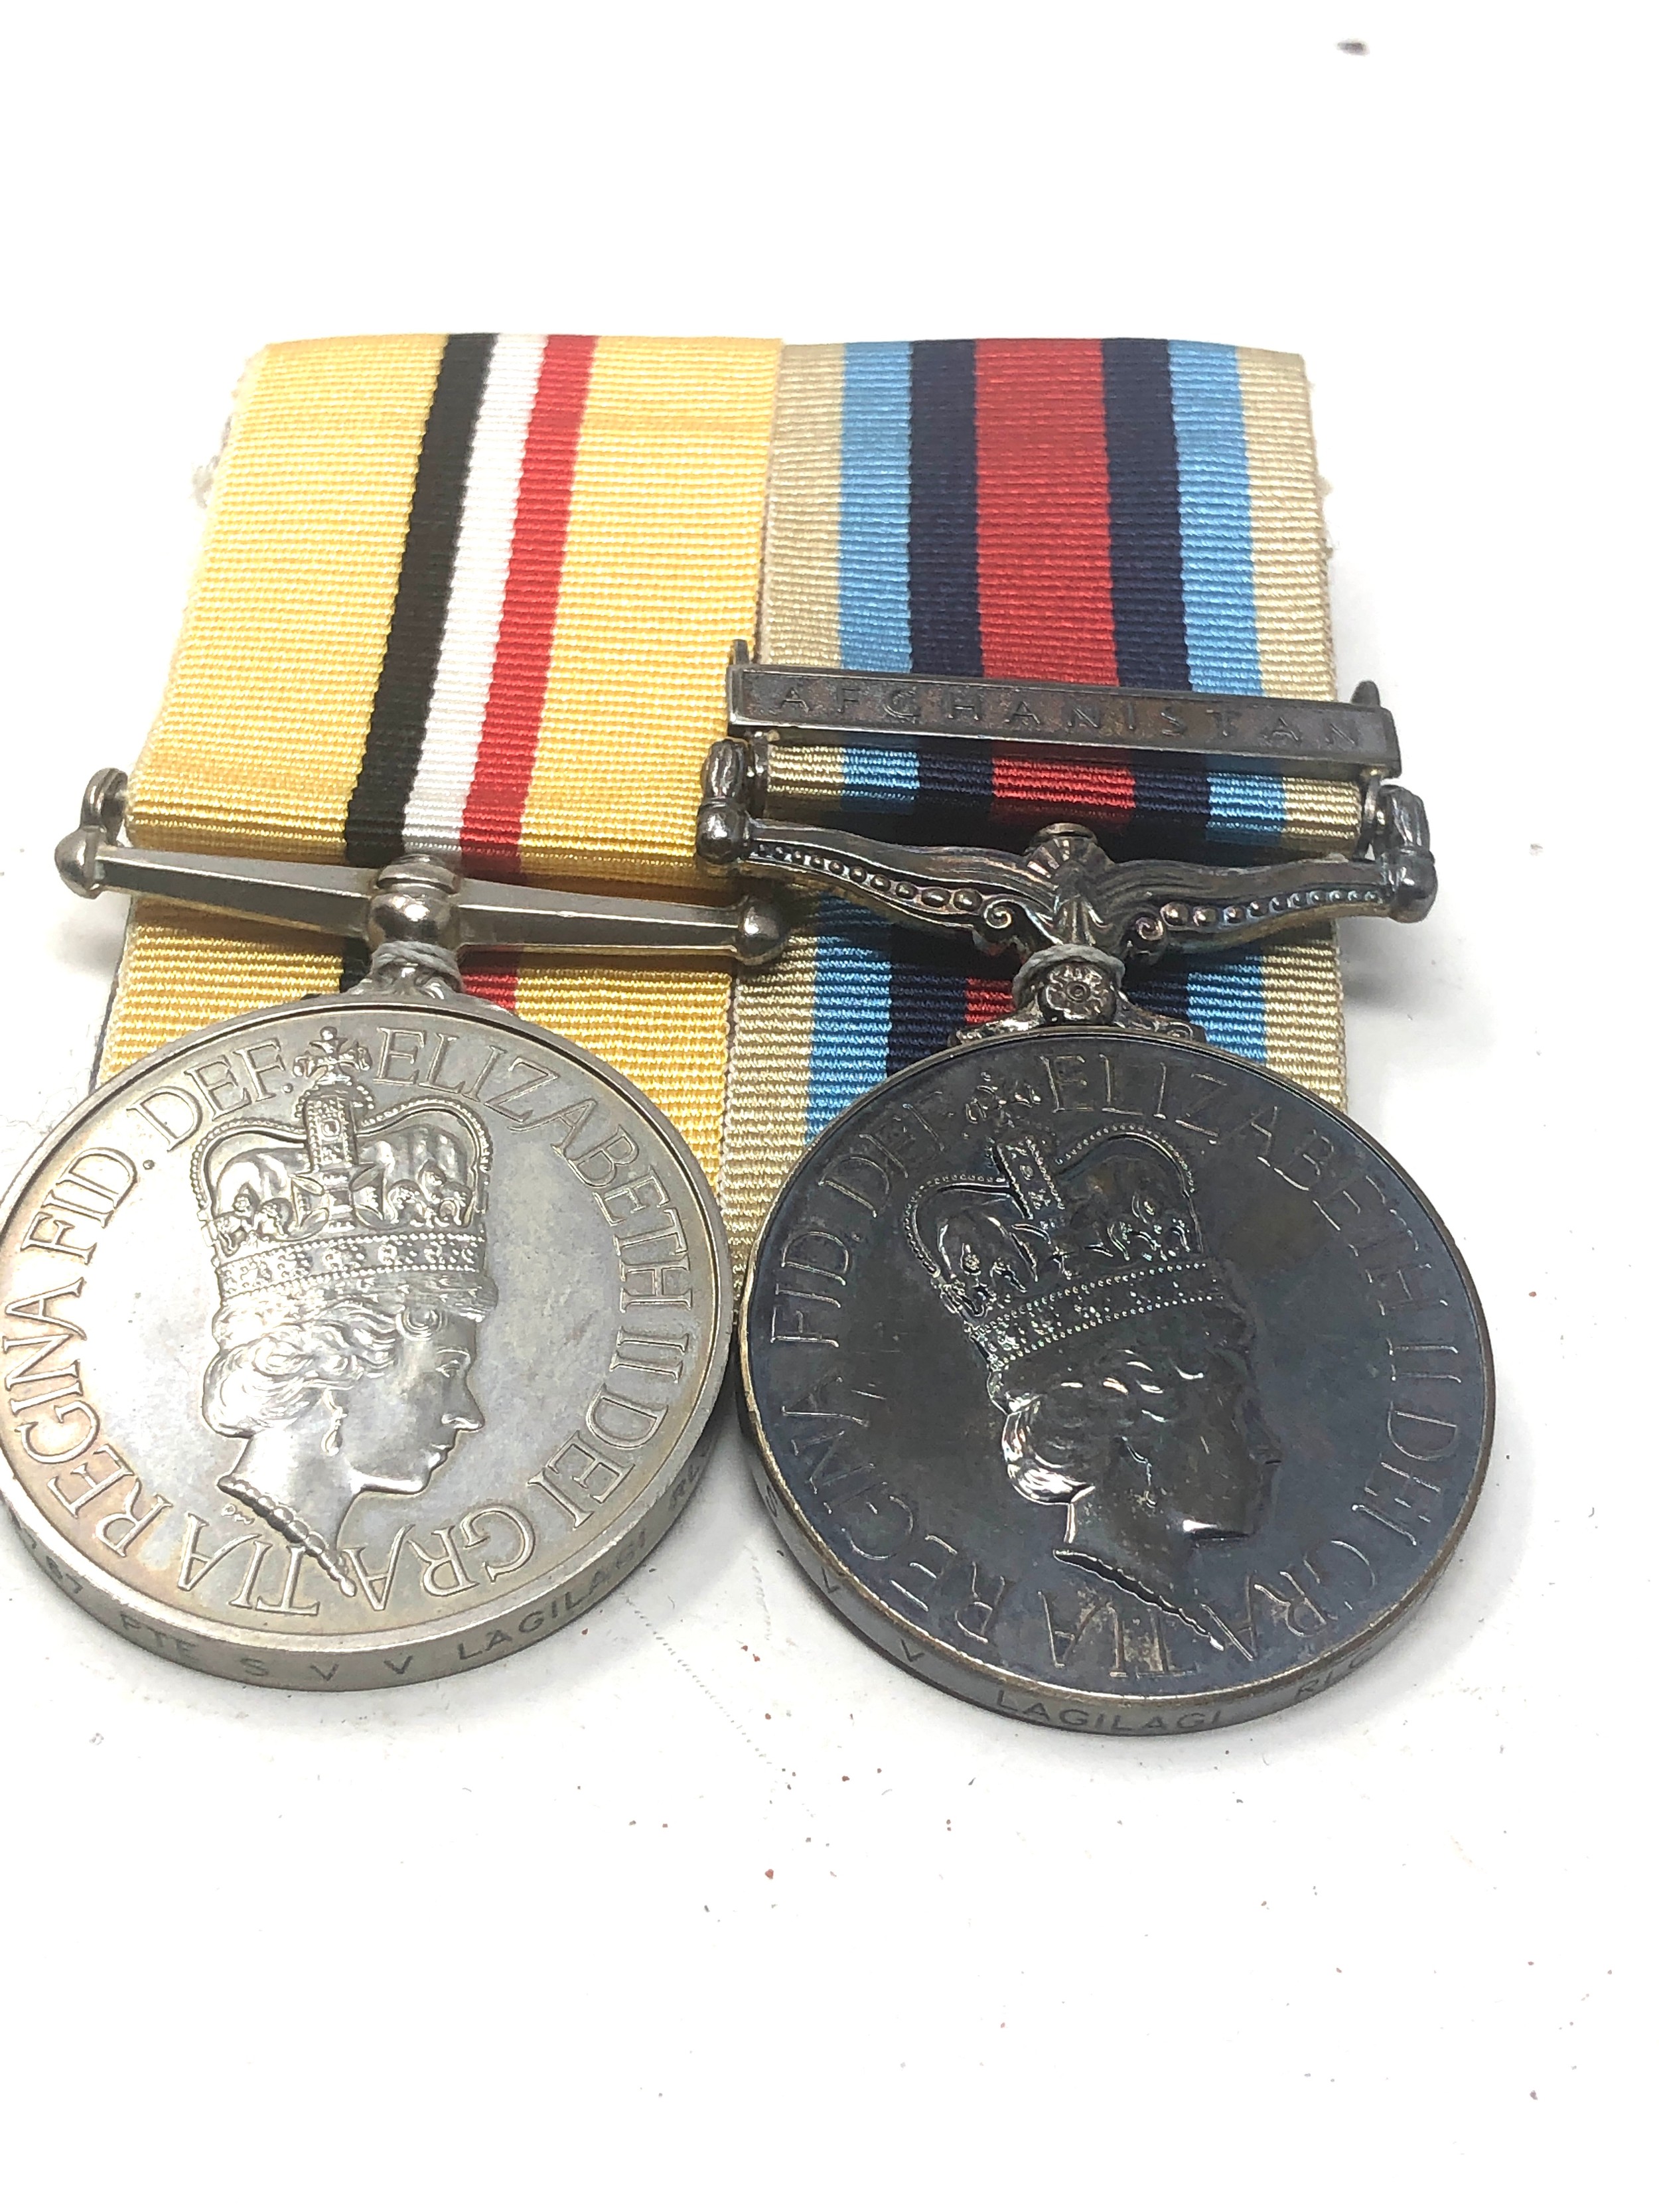 ER.11 mounted Iraq & Afghanistan medals to 25199767 pte s.v.v lagilagi r.l.c - Image 2 of 2